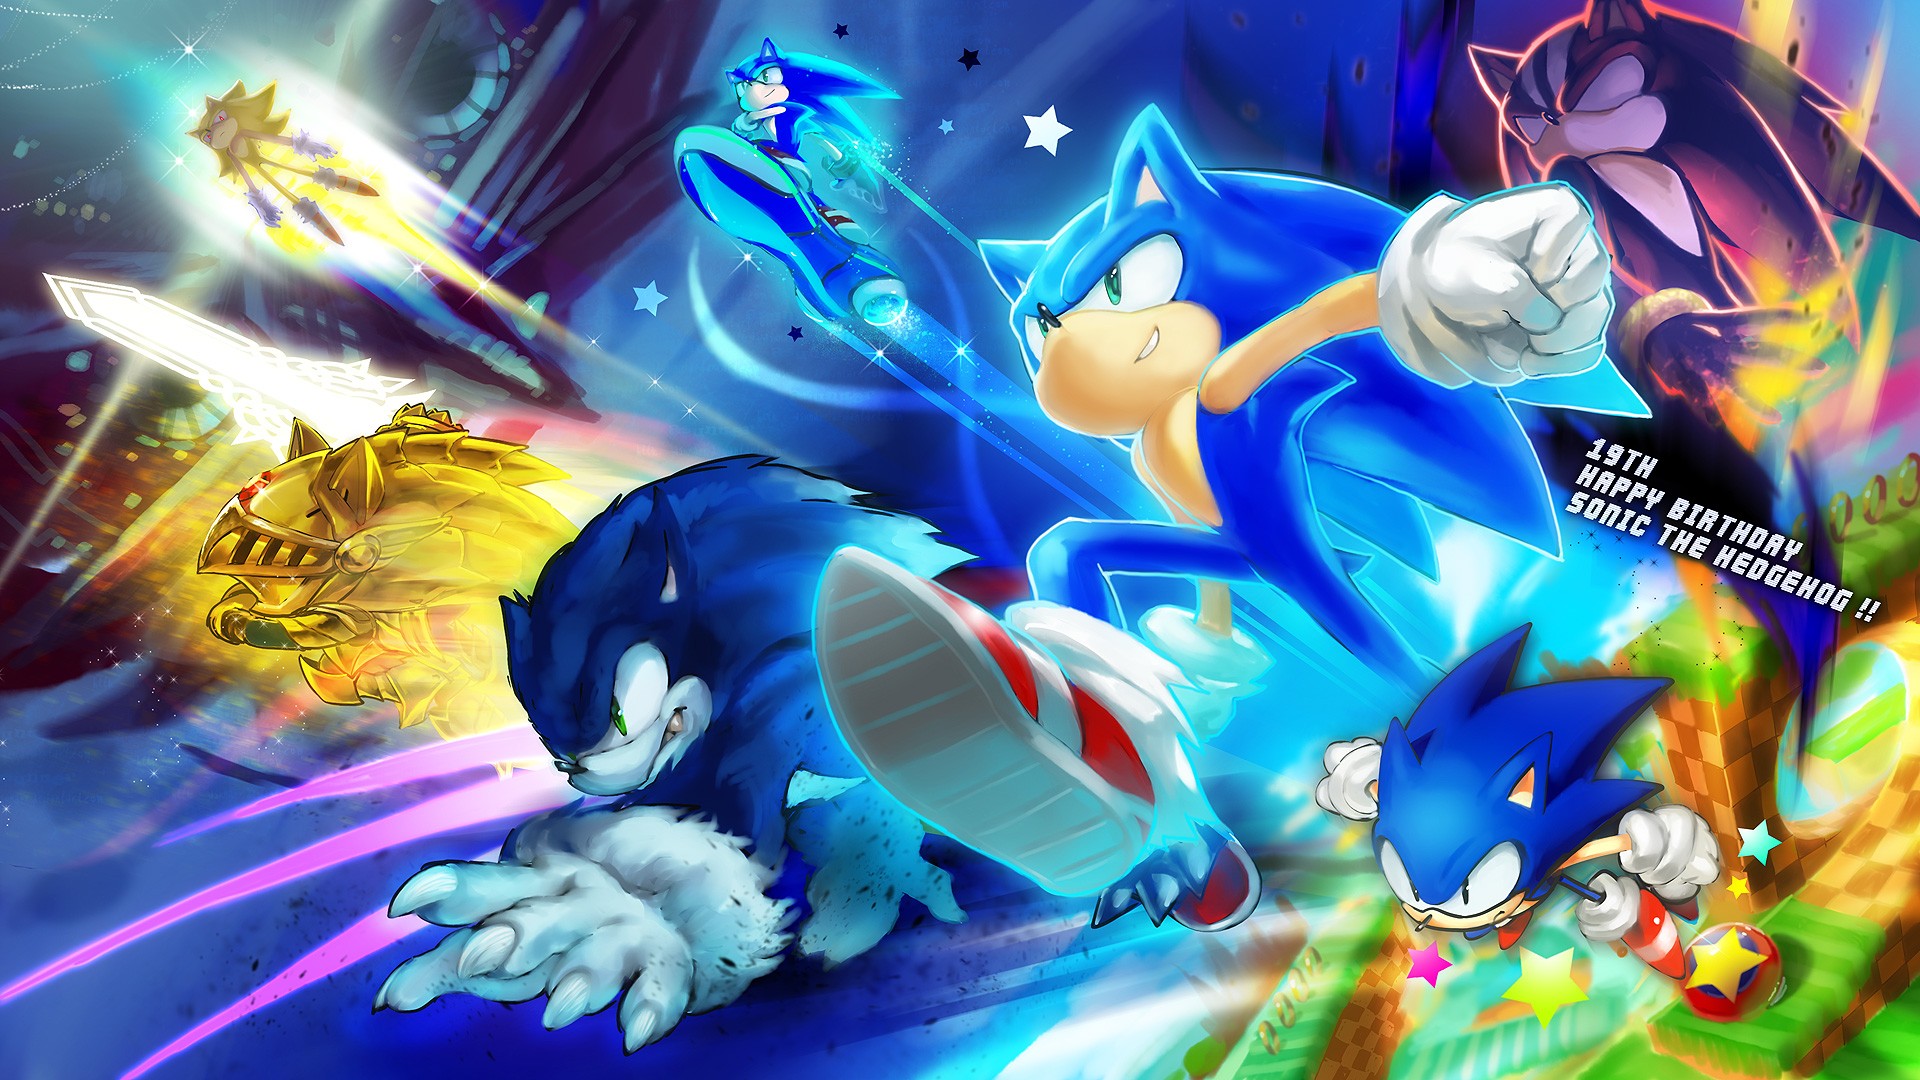 Sonic The Hedgehog Puter Wallpaper Desktop